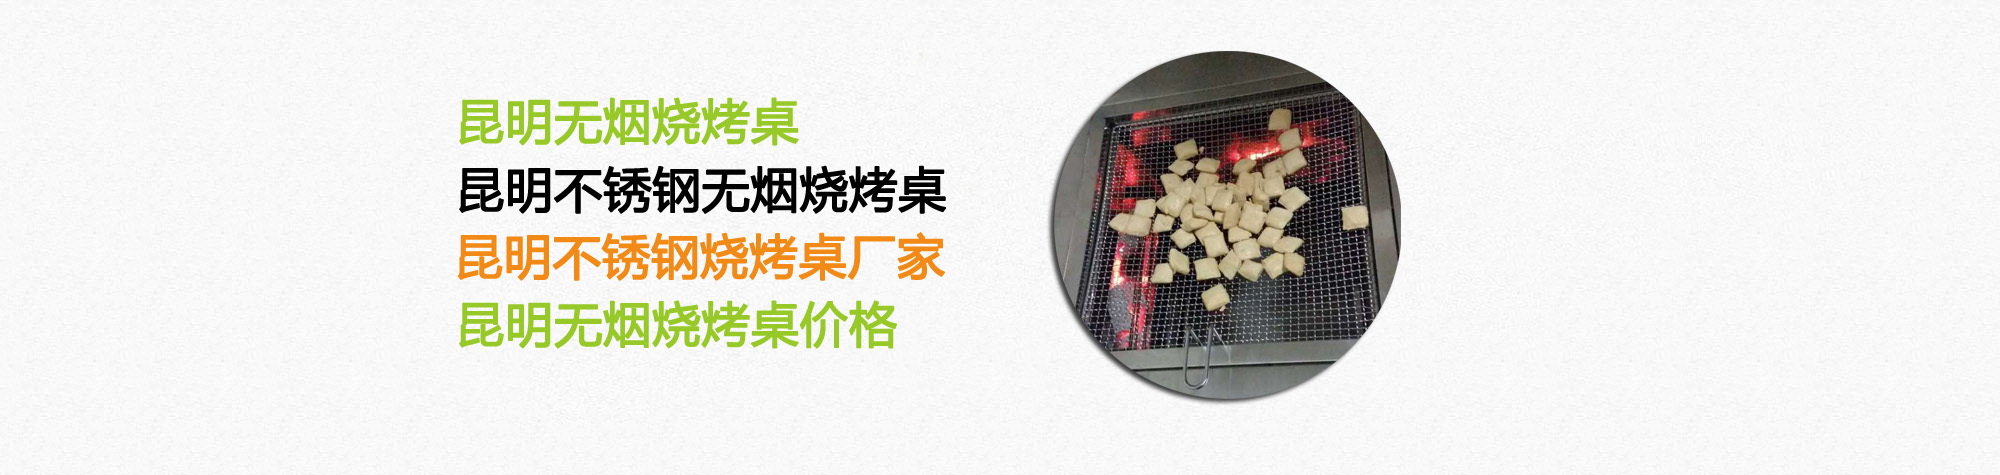 云南昆明不锈钢烧烤桌厂家告诉你自动烧烤桌的优点